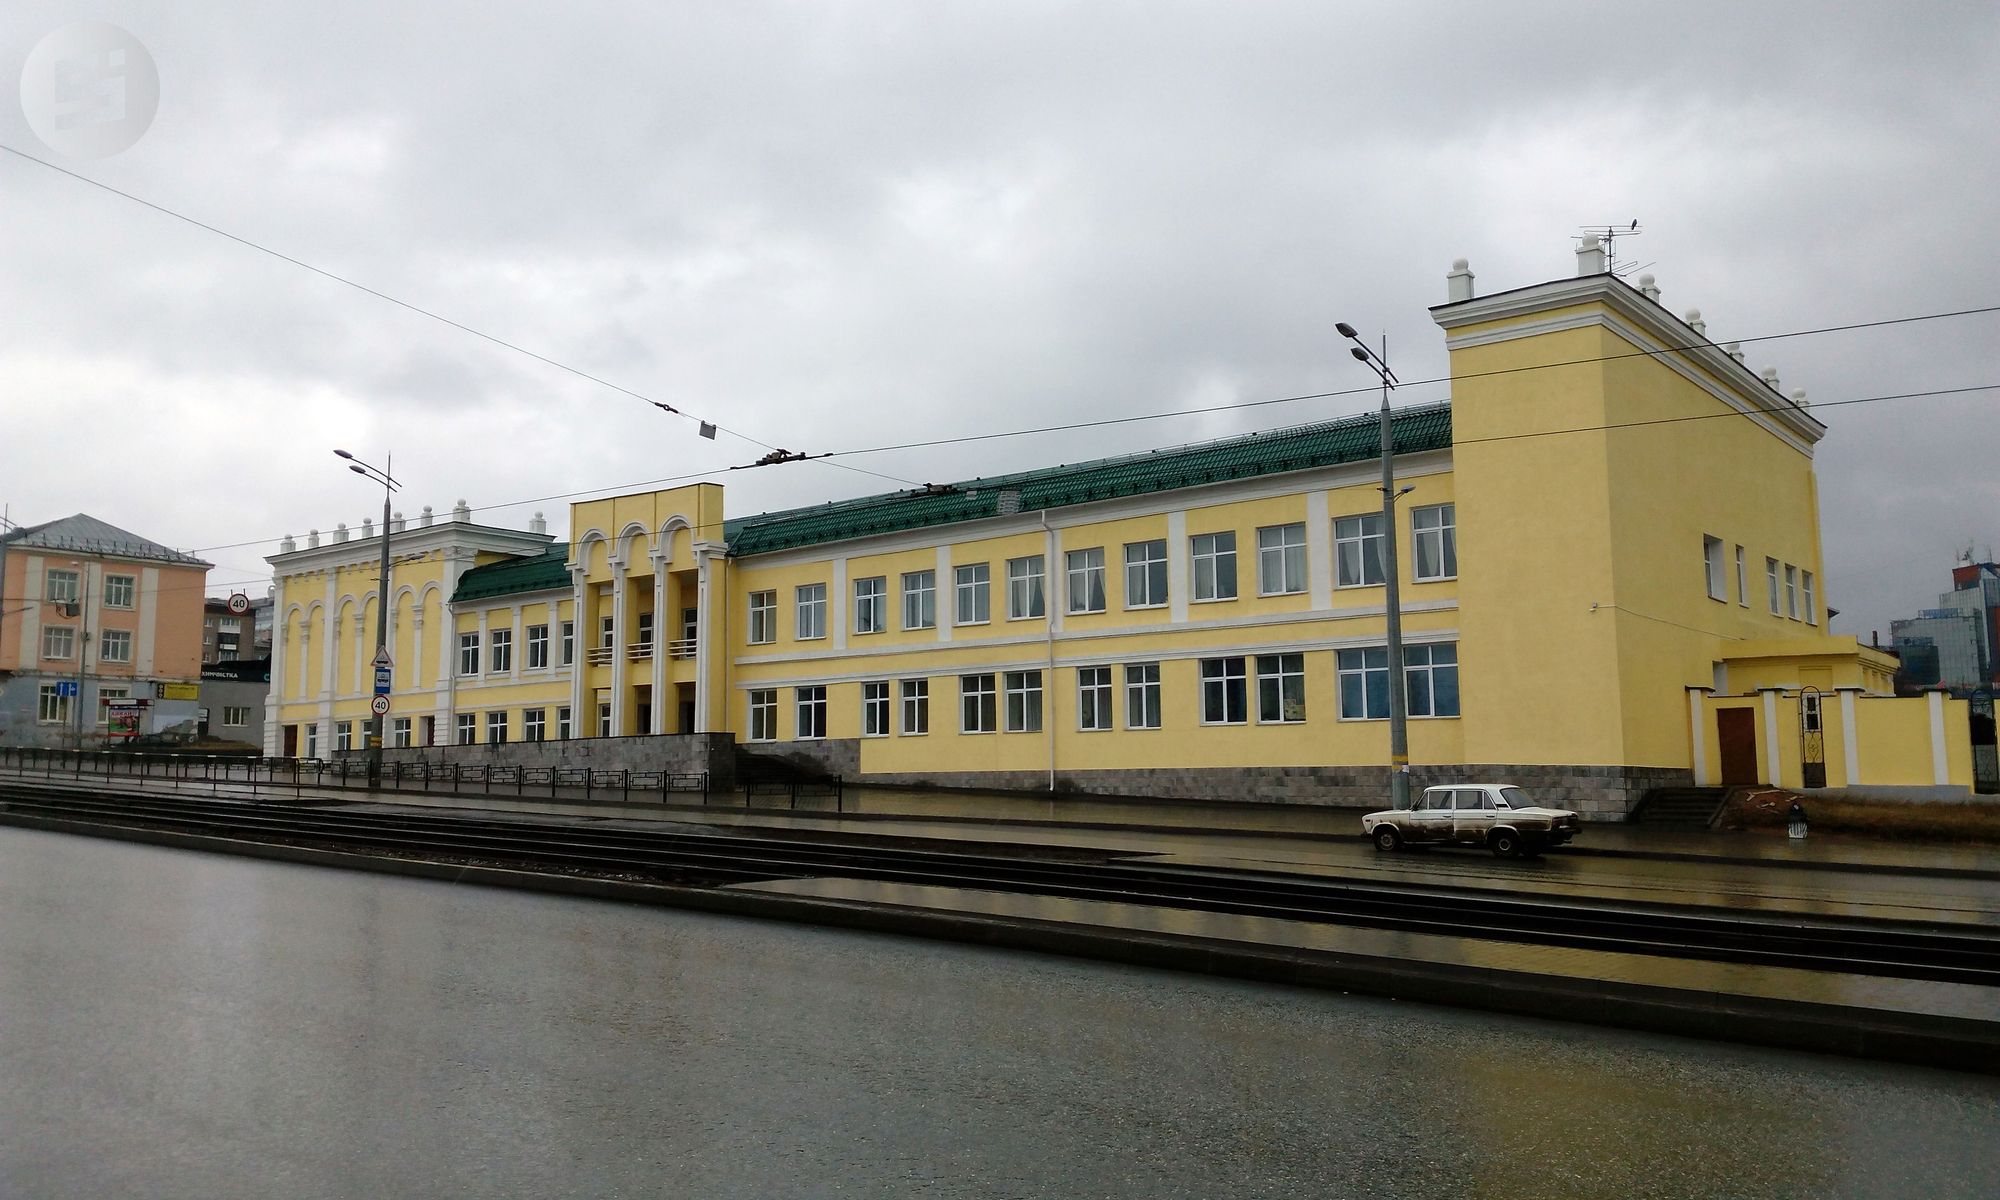 

Власти Удмуртии вернулись к вопросу реконструкции бывшего театра Короленко под центр удмуртской культуры

